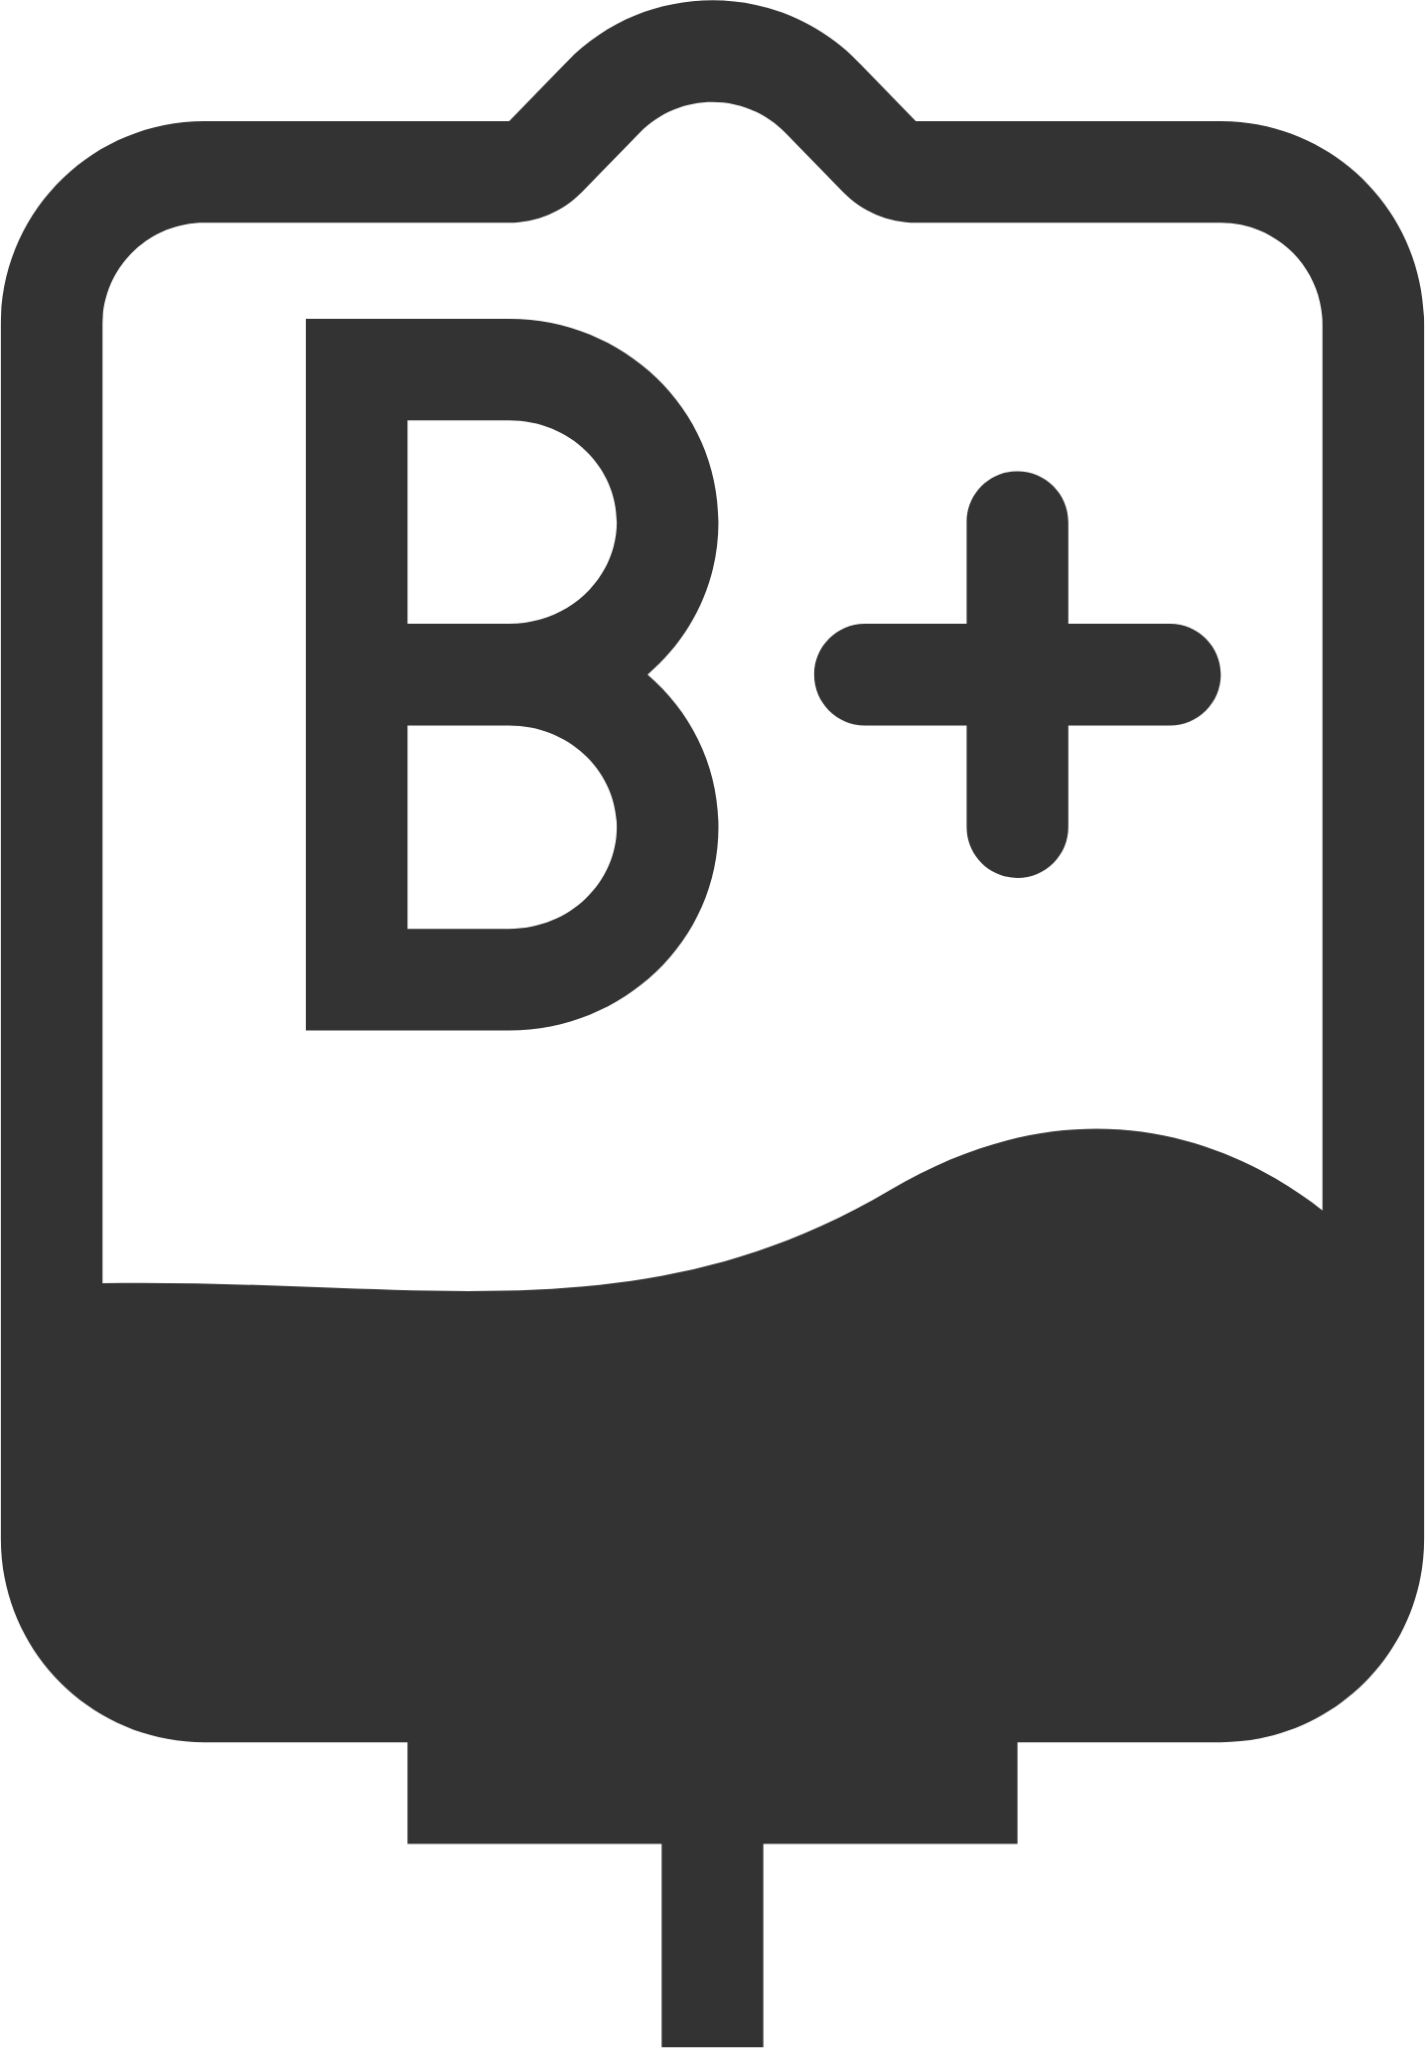 Blood Type B+ icon